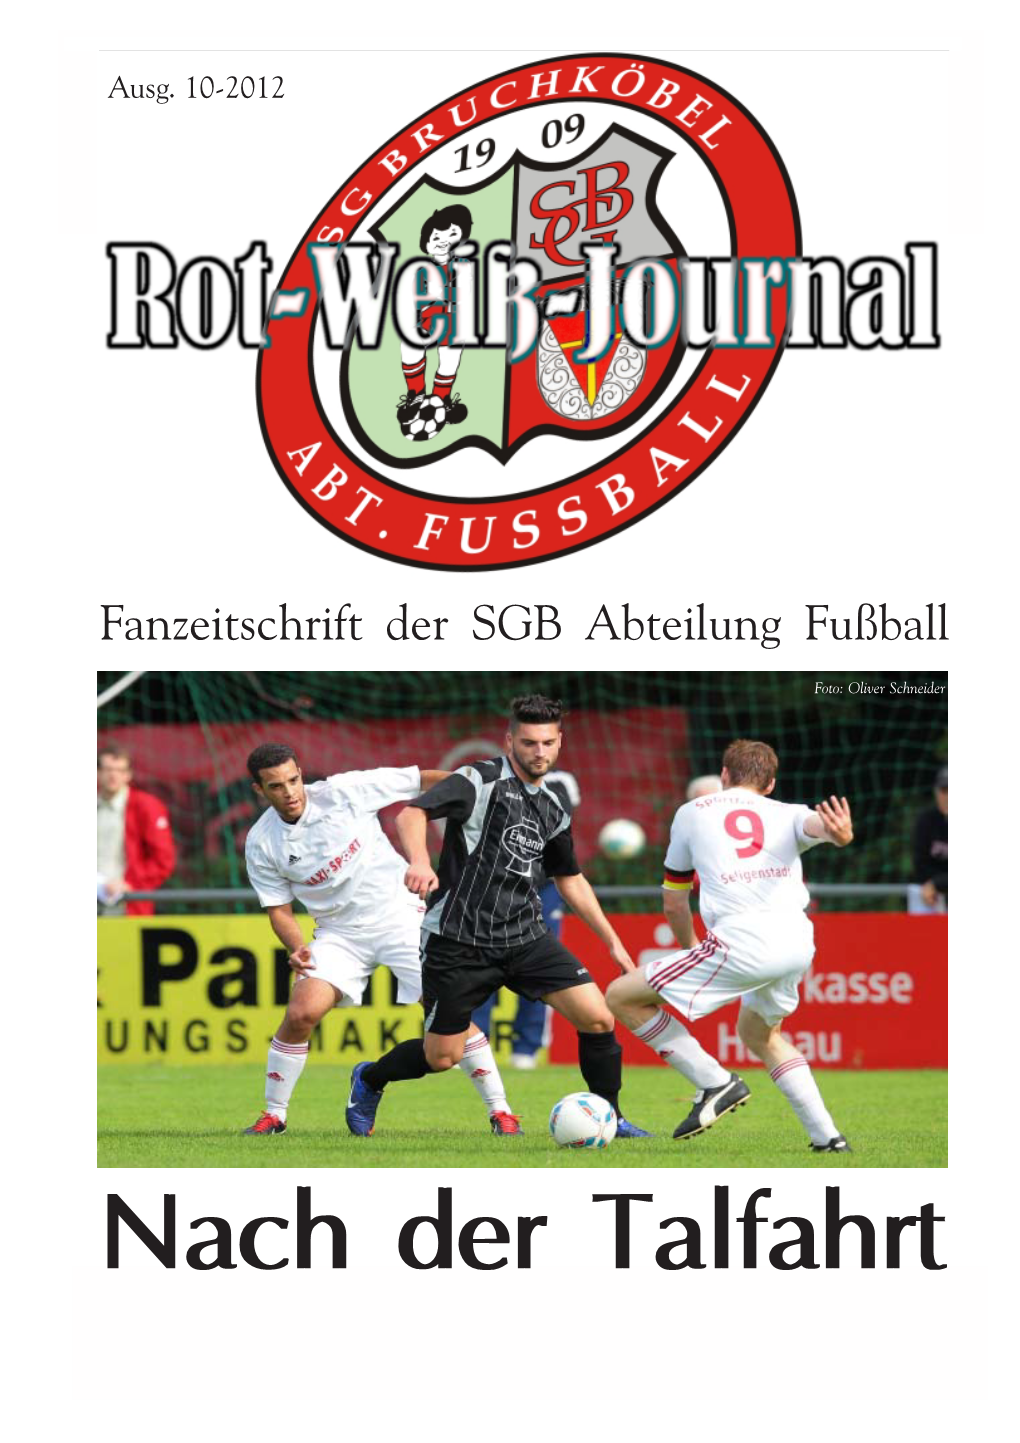 Sportgemeinschaft 1868 Bruchköbel Abteilung Fußball Rot-Weiß-Journal SGB Abteilung Fußball Gegründet: 1909 Mitglieder: Ca